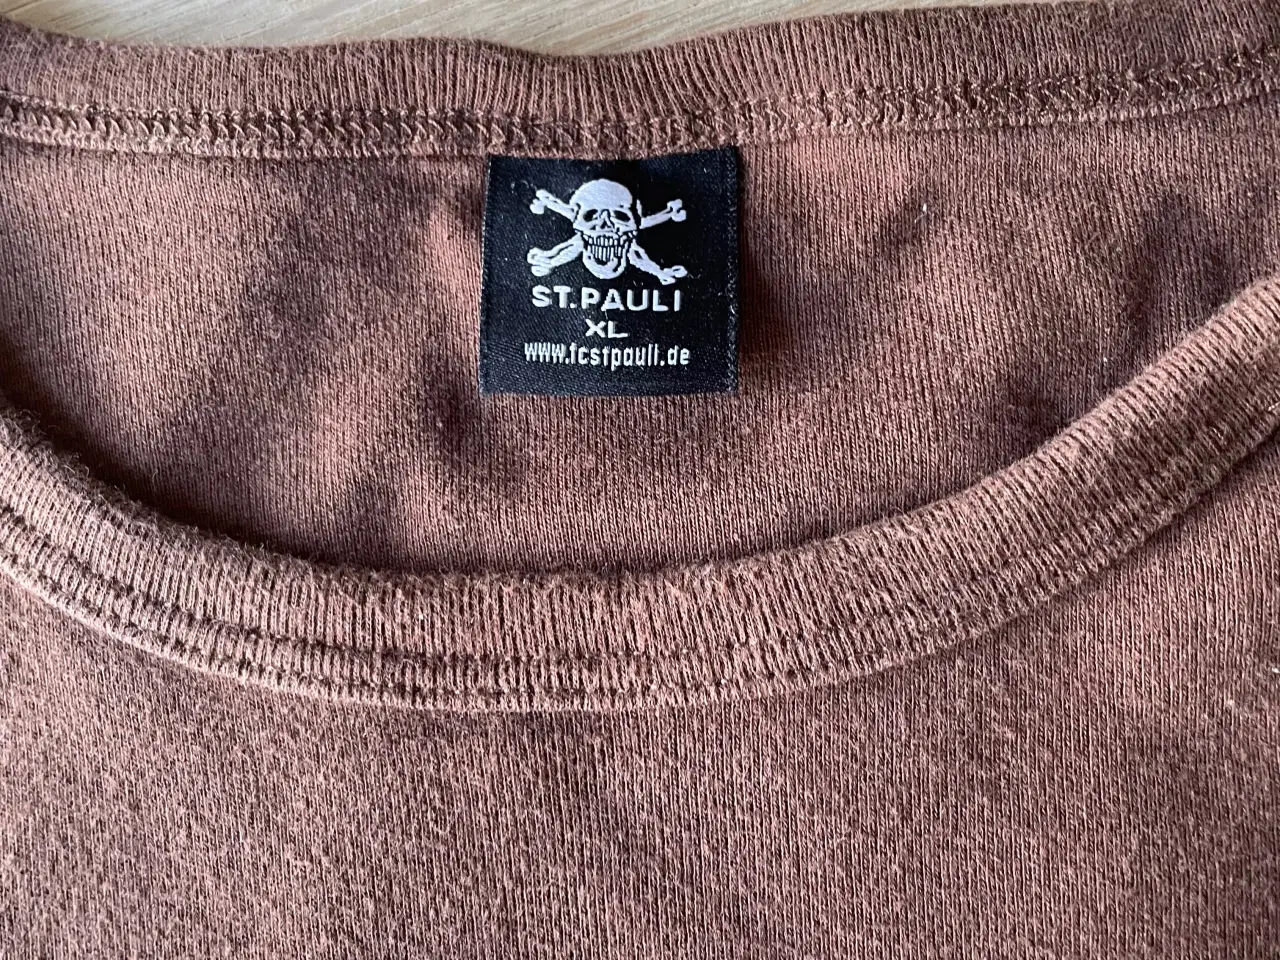 Billede 2 - St.Pauli retro sportstrøje. XL.